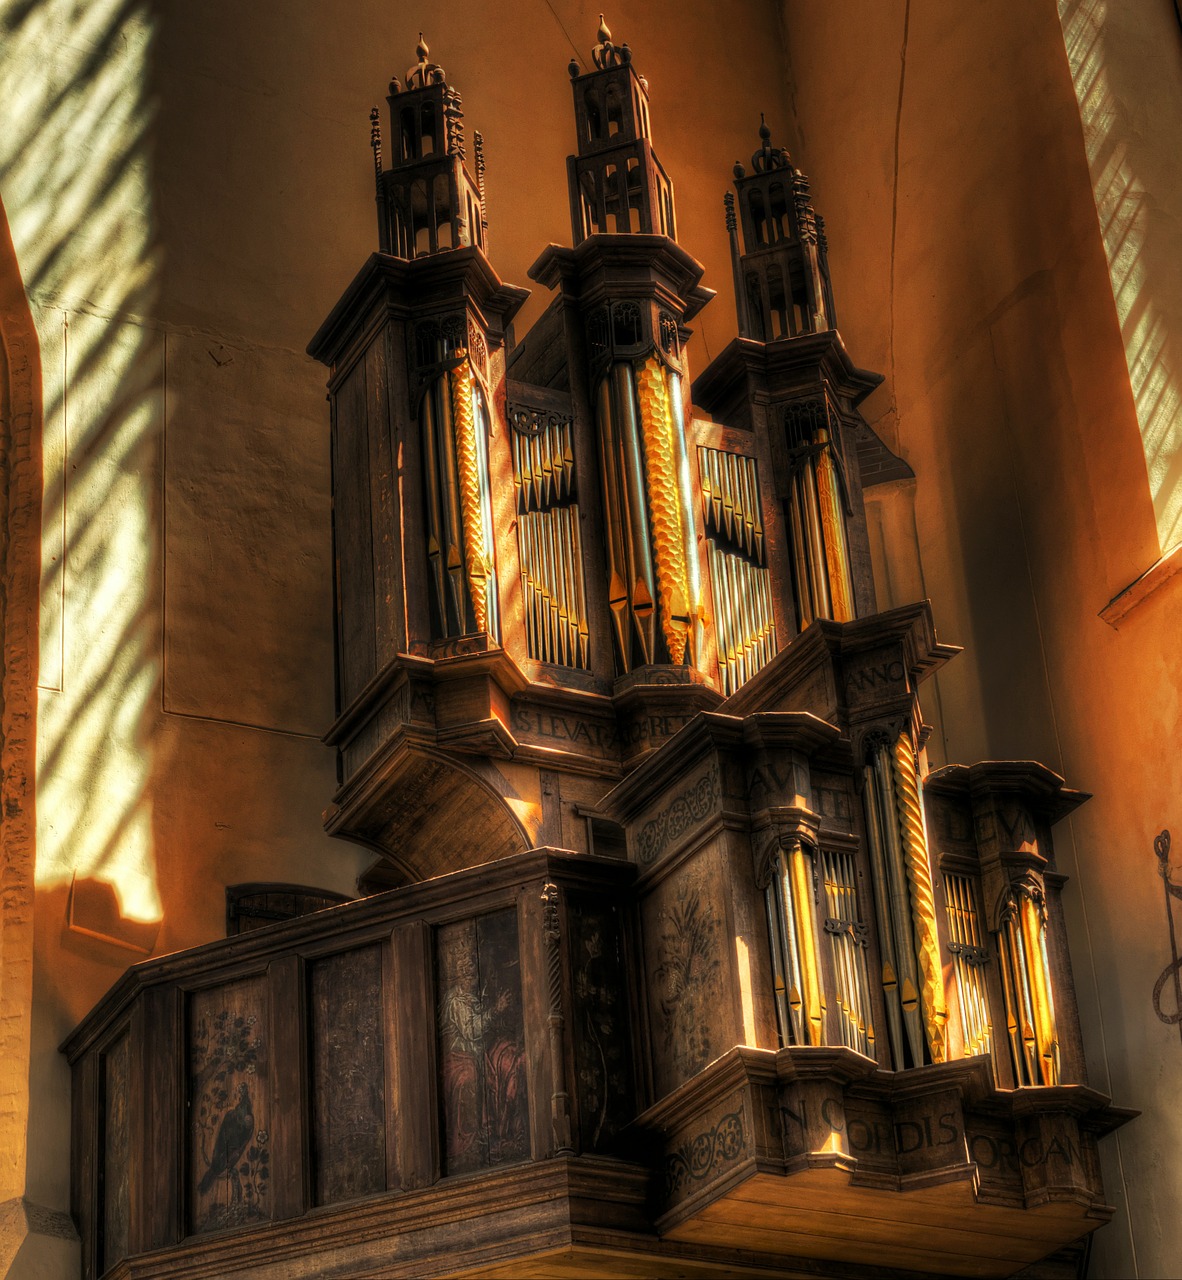 Vamzdžių Organas, Organas, Muzikinis Instrumentas, Bažnyčia, Katedra, Senovinis, Istorinis, Muzika, Hdr, Architektūra